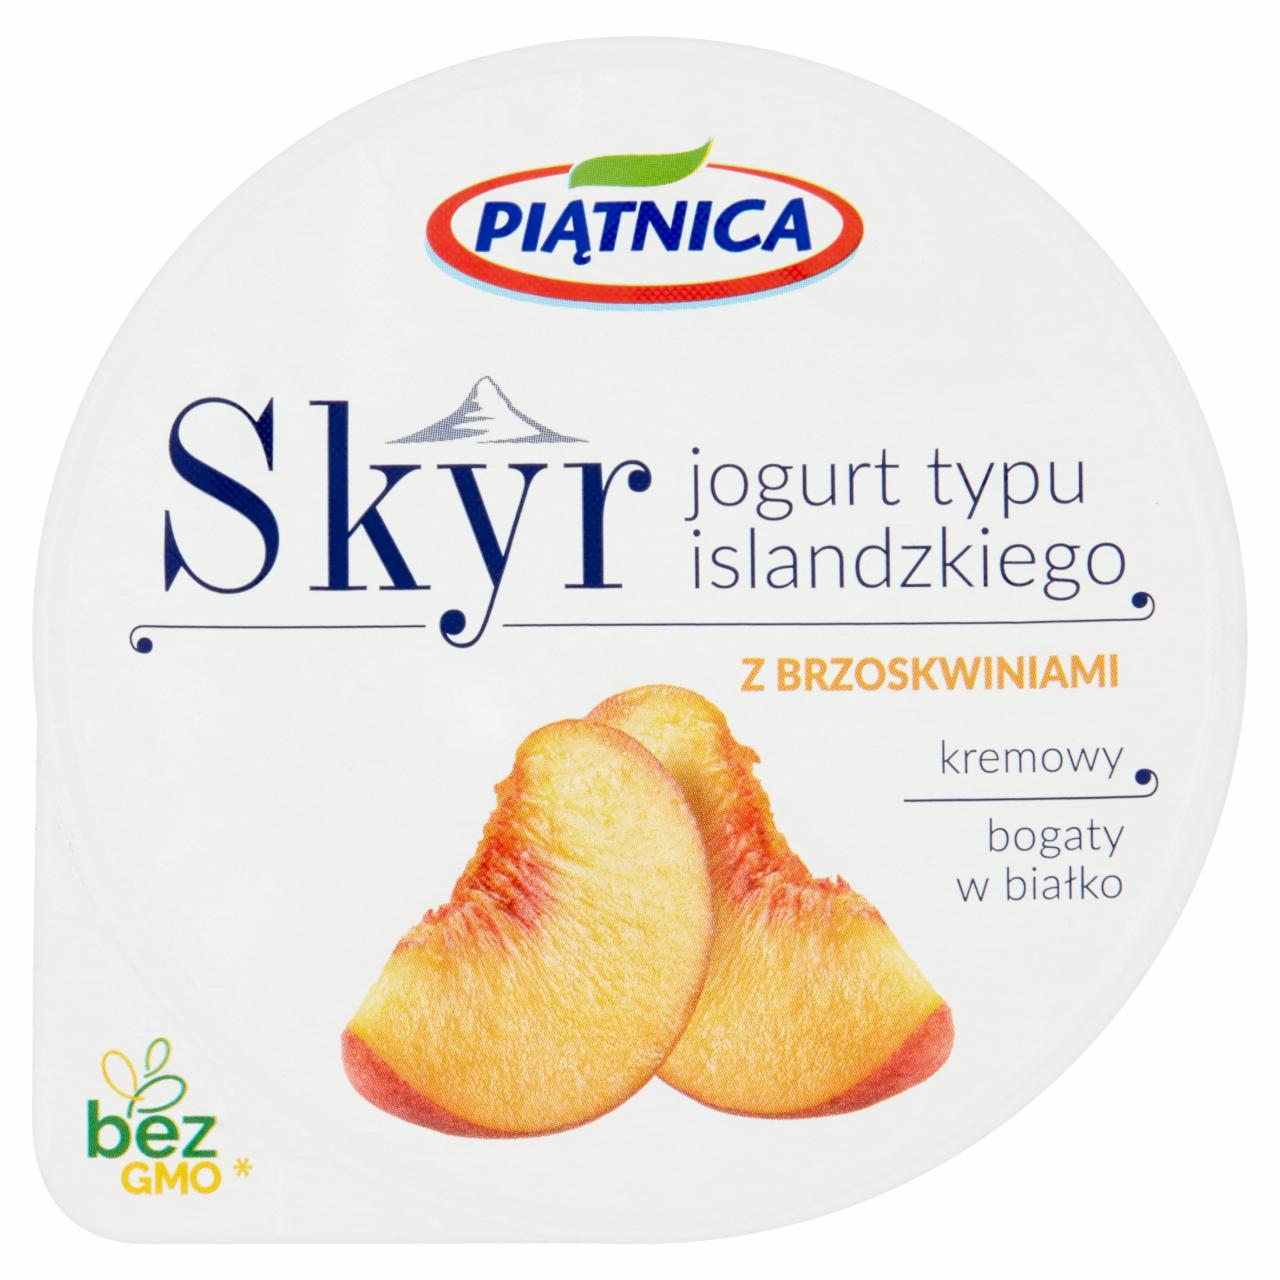 Zdjęcia - Piątnica Skyr Jogurt typu islandzkiego z brzoskwiniami 150 g